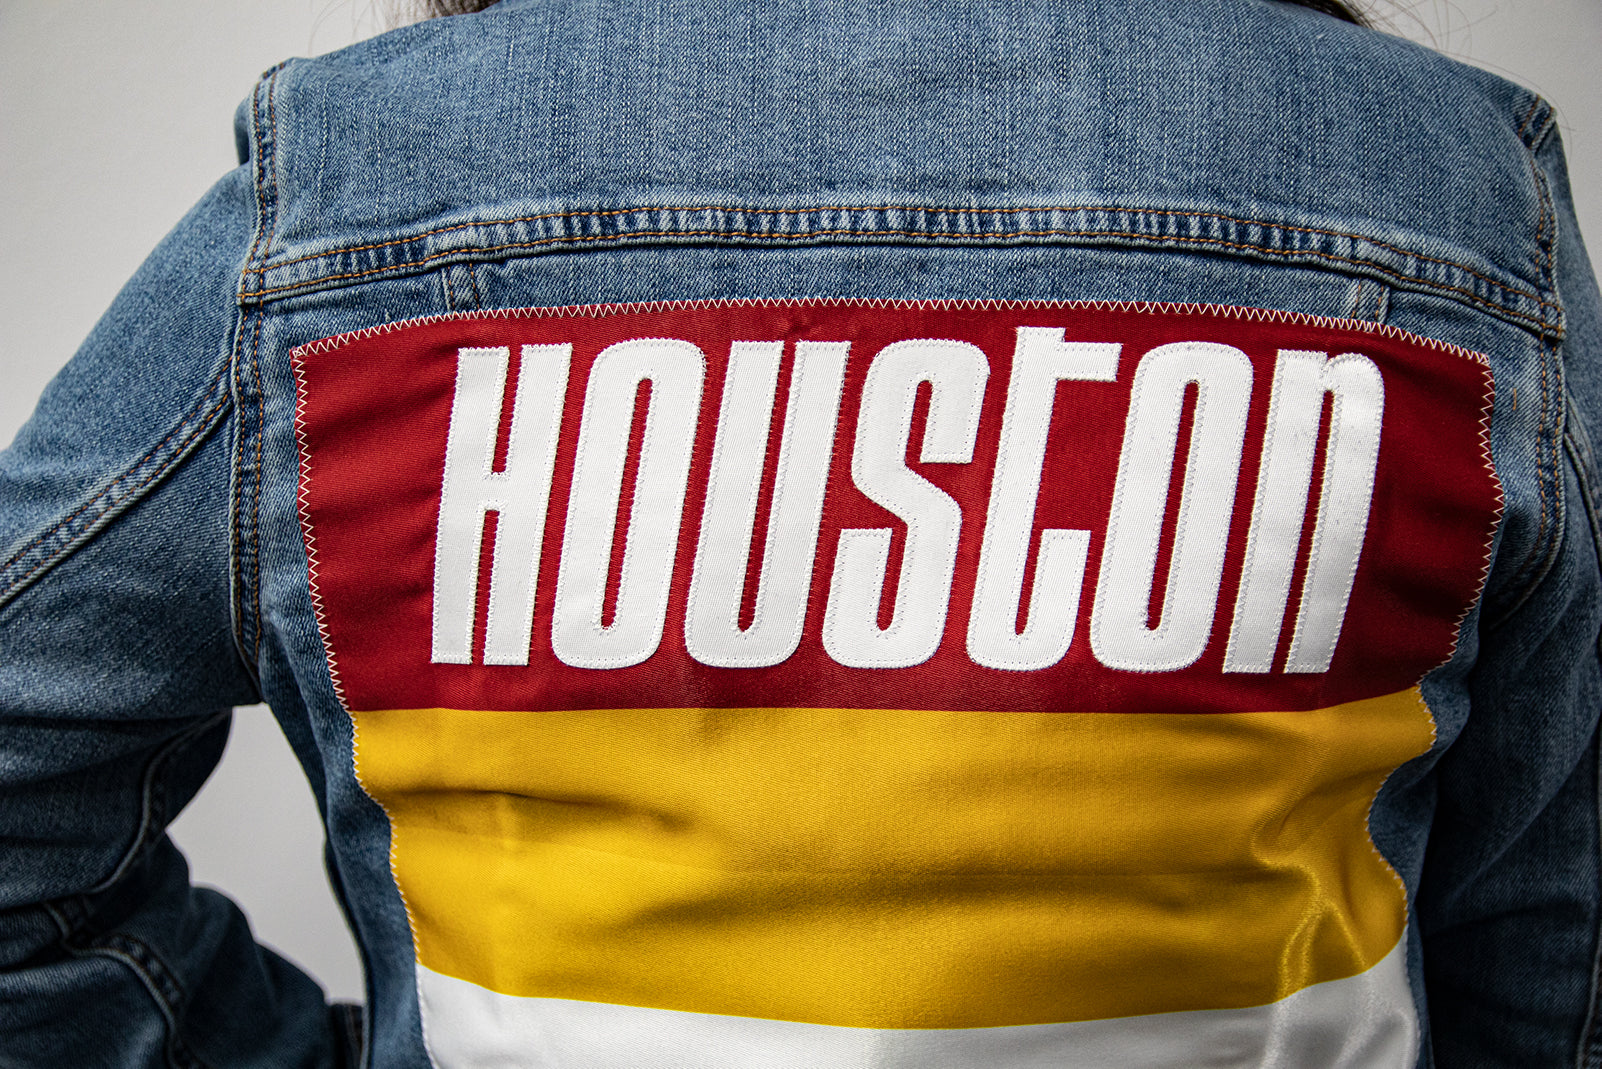 Custom Houston Basketball Team Retro Rainbow Light Denim Jacket For Women 